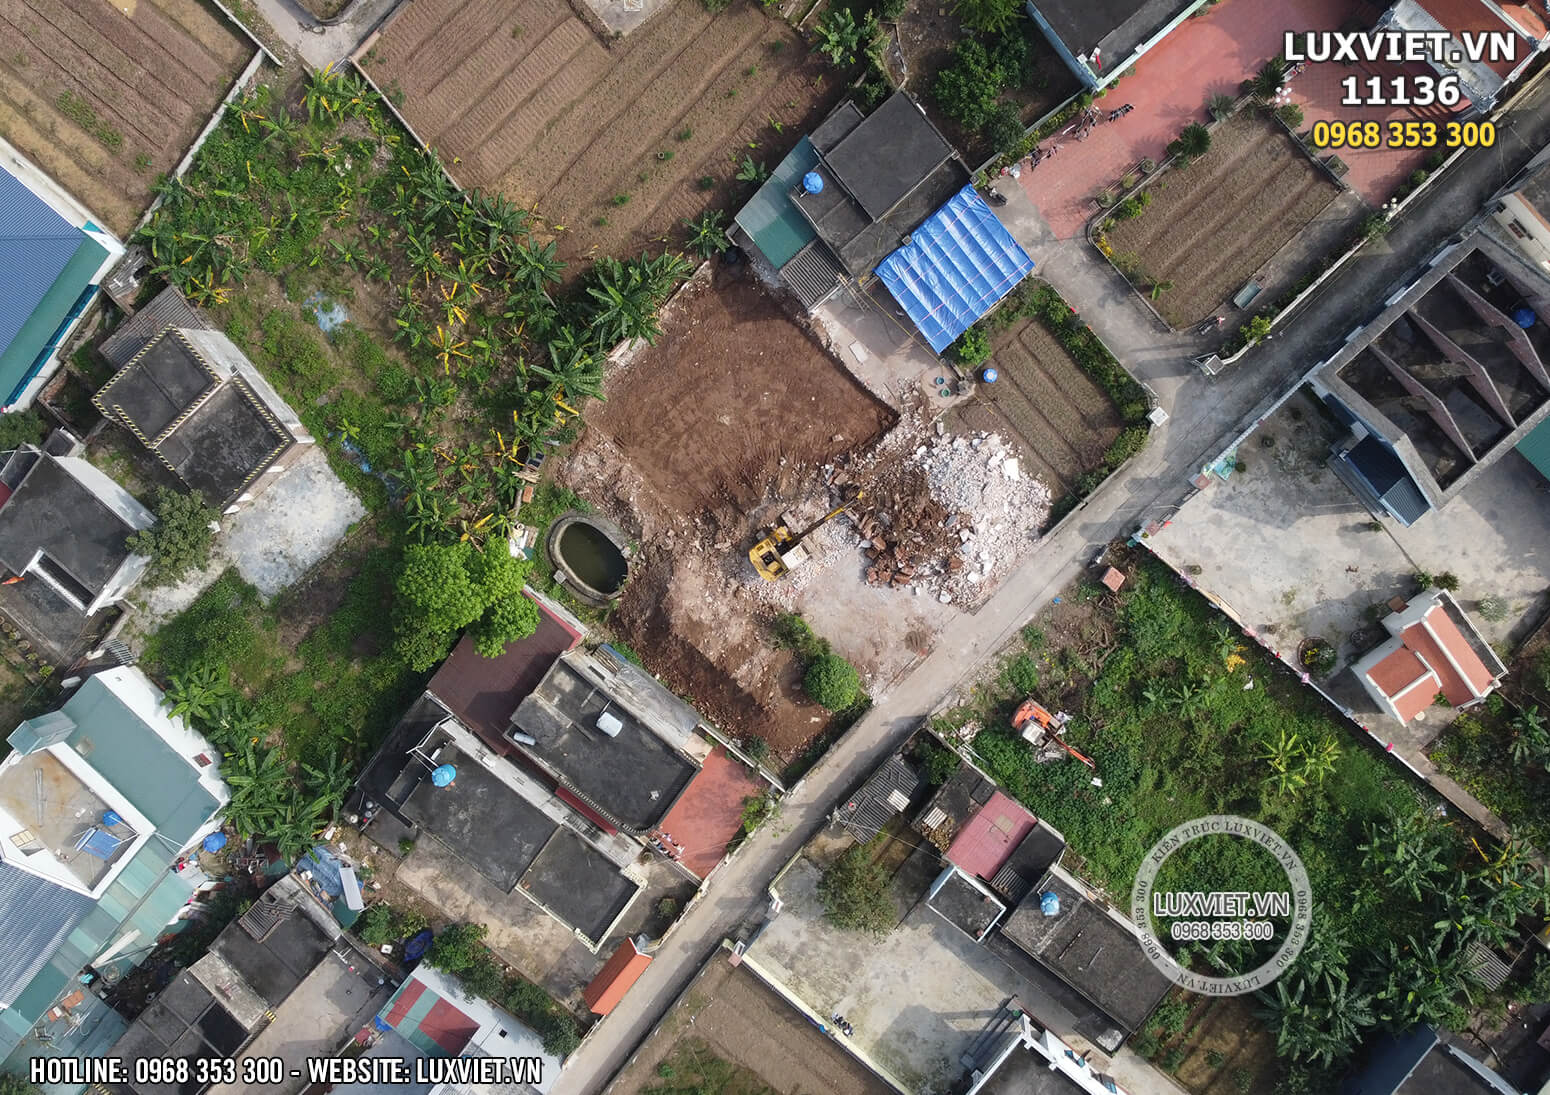 Hình ảnh khuôn đất được định vị từ trên cao bằng flycam